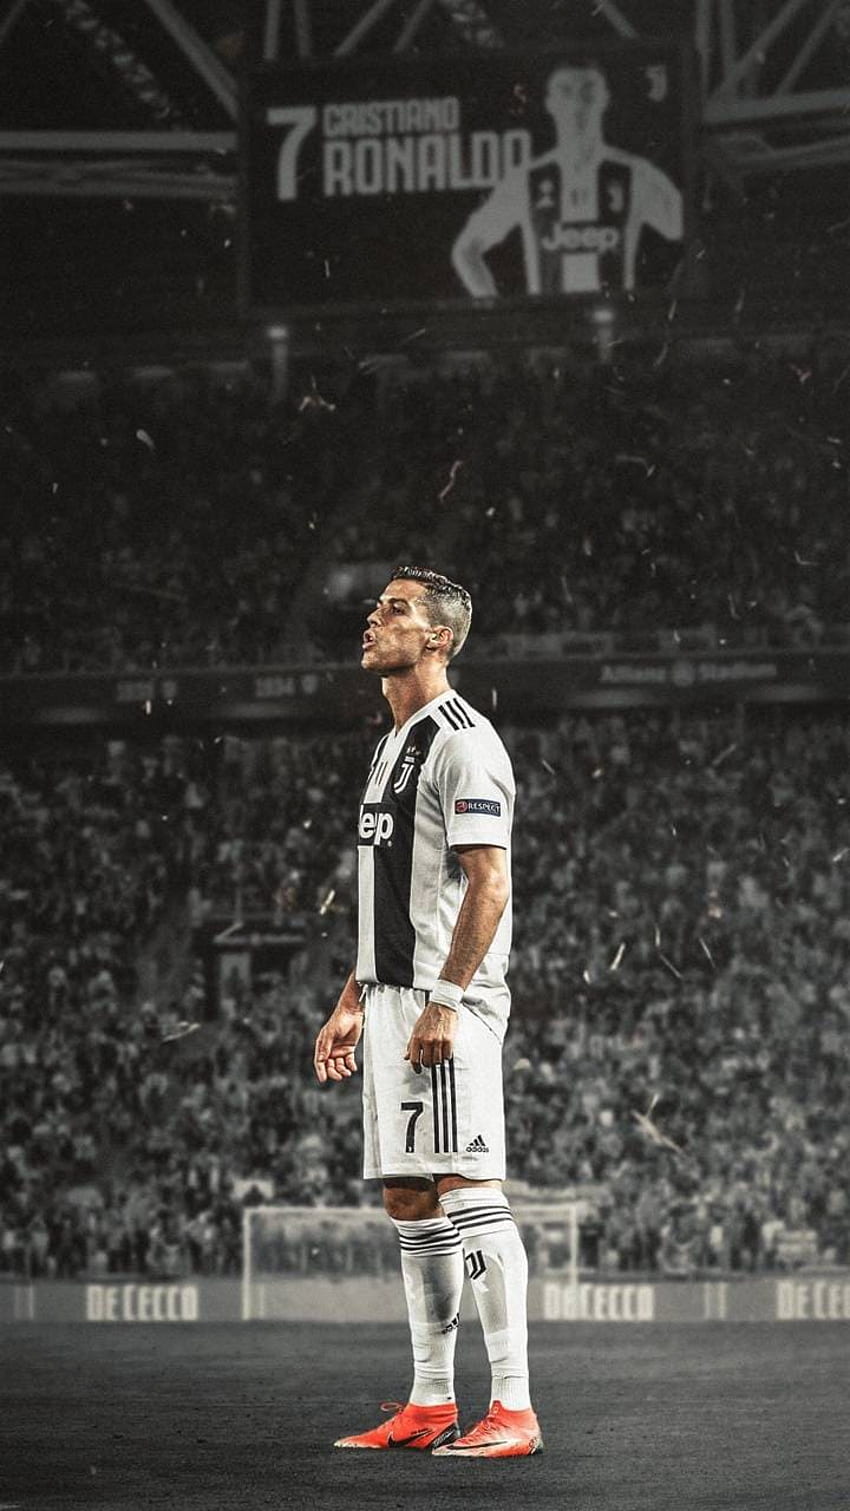 Siêu sao Cristiano Ronaldo luôn khiến chúng ta bị mê hoặc bởi phong cách và vẻ ngoài của anh ta, đặc biệt hình nền Cr7 với bộ trang phục đen cá tính, sẵn sàng mang đến cho bạn sự khác biệt và mạnh mẽ cần thiết trong công việc!